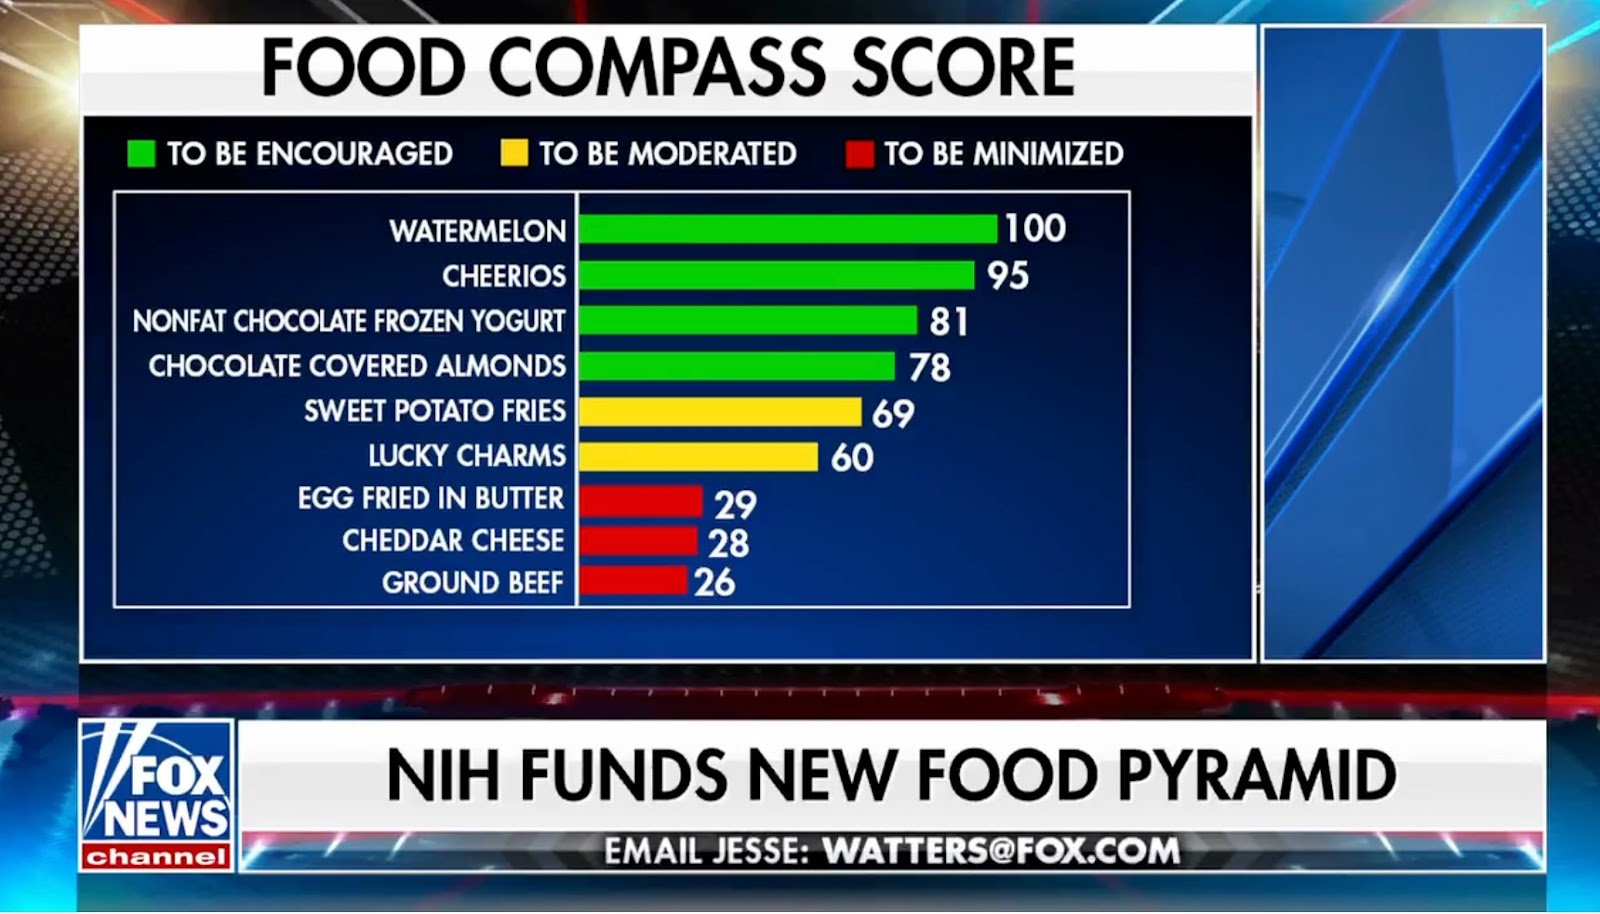 Fox News chyron: “NIH funds new food pyramid”